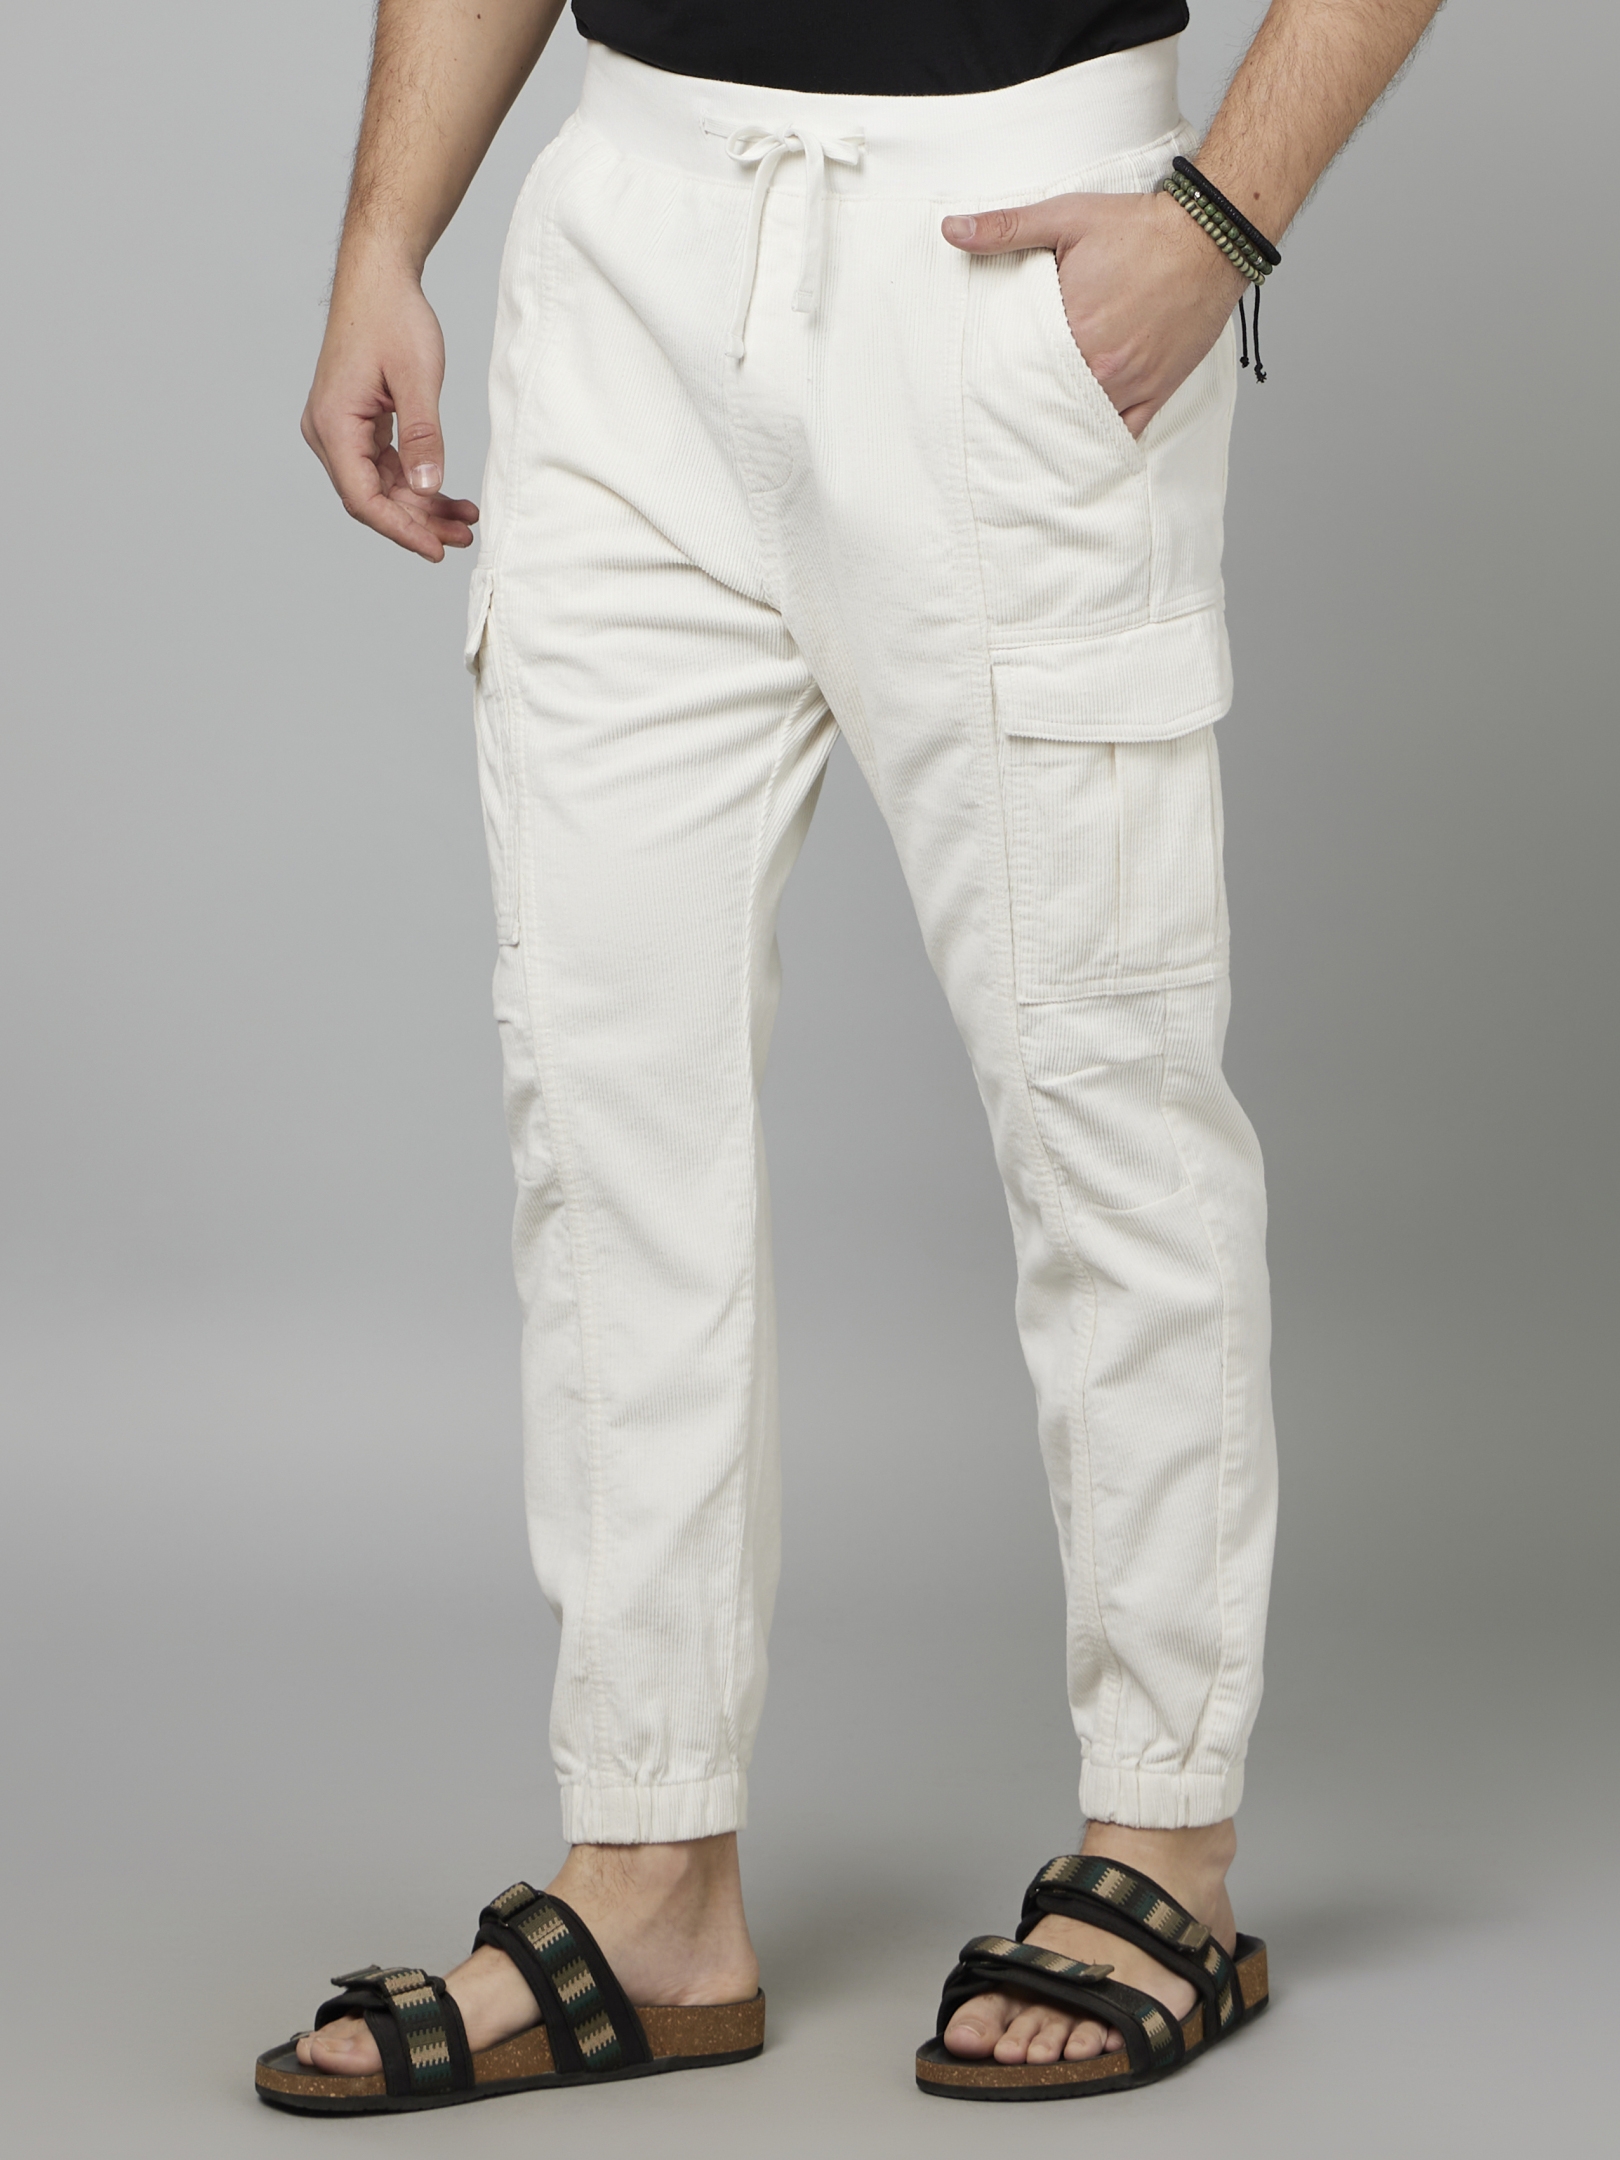 COMBRAIDED Slim Fit Men Grey Trousers - Buy COMBRAIDED Slim Fit Men Grey  Trousers Online at Best Prices in India | Flipkart.com